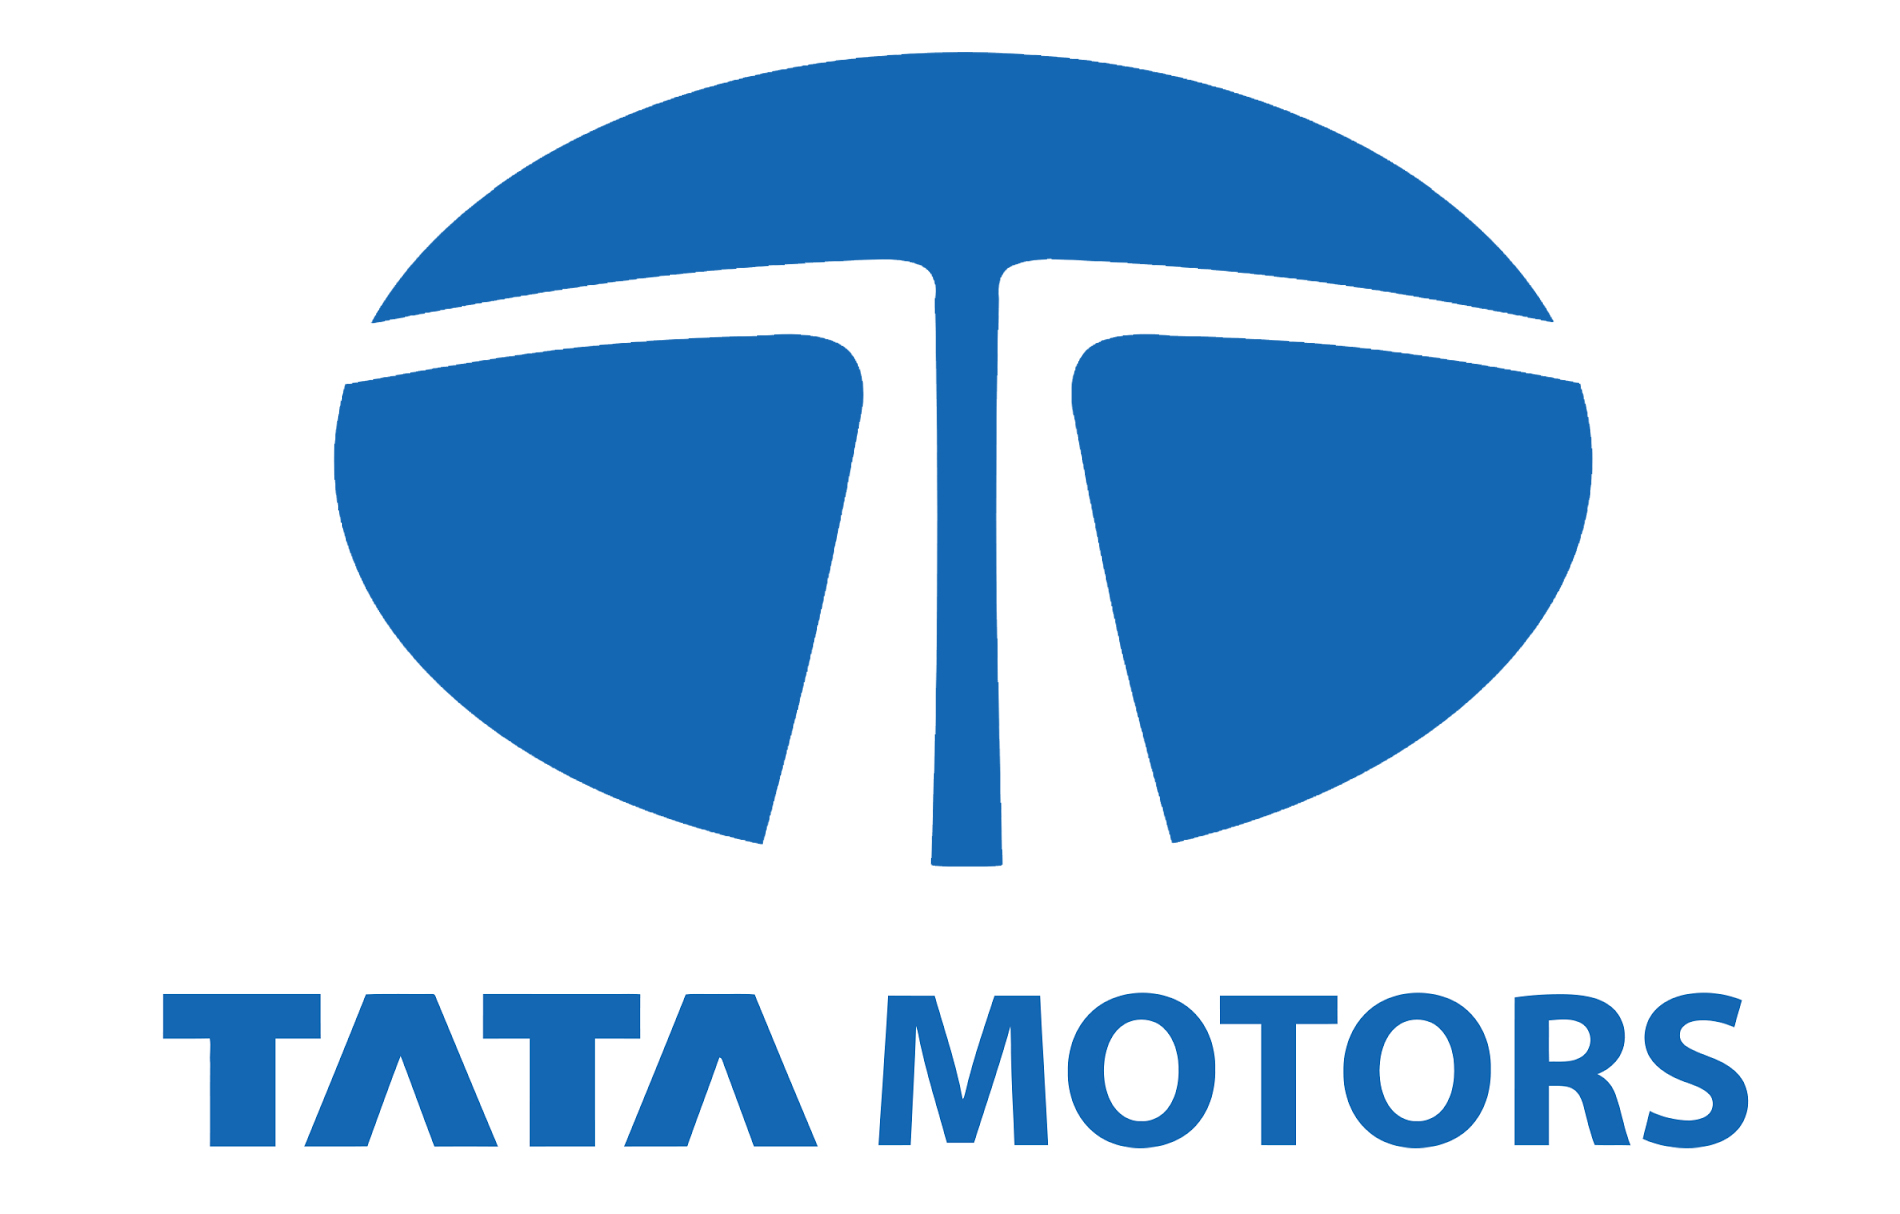 Tata Motors Cars Showroom - Omkar Motors|Show Room|Automotive